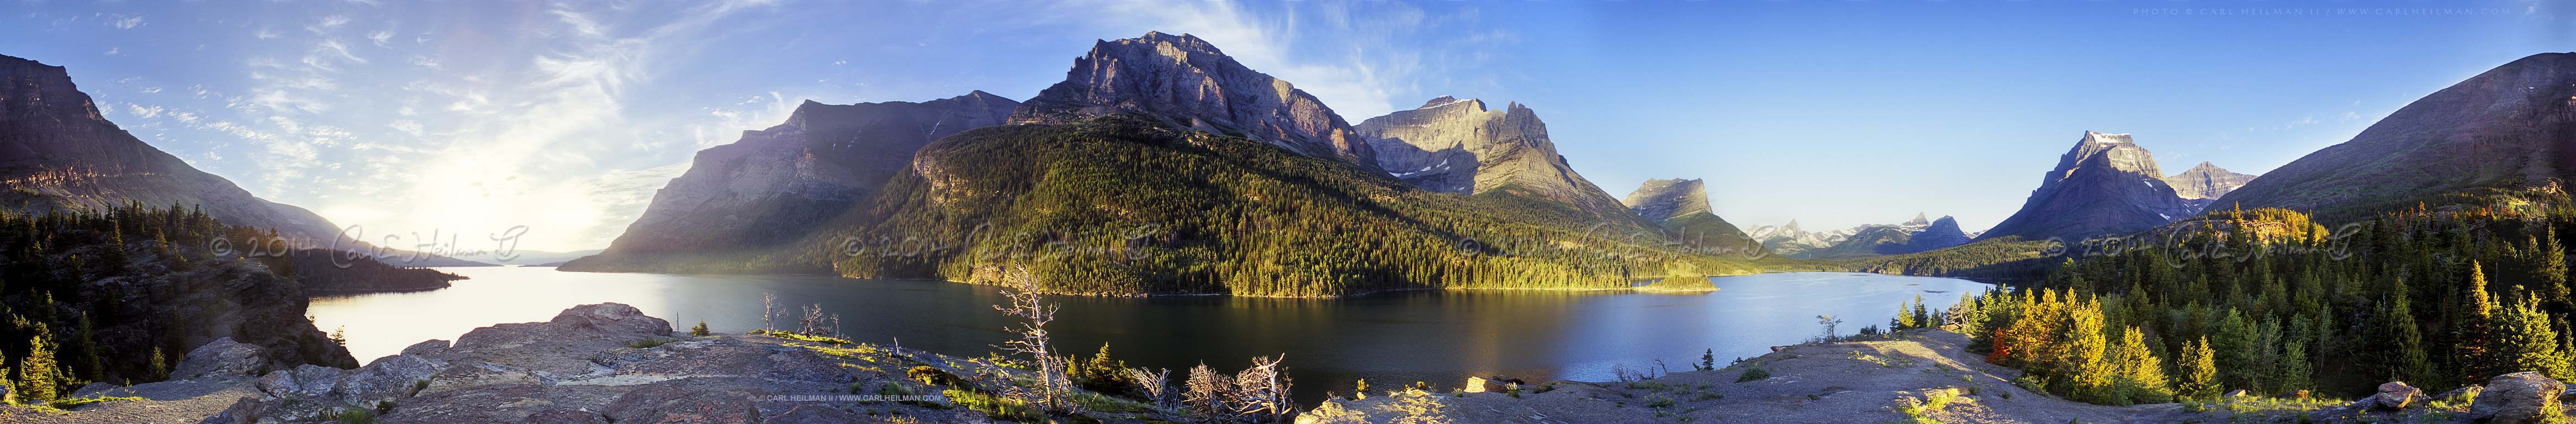  Park Montana National Parks nature photography panoramic screensaver